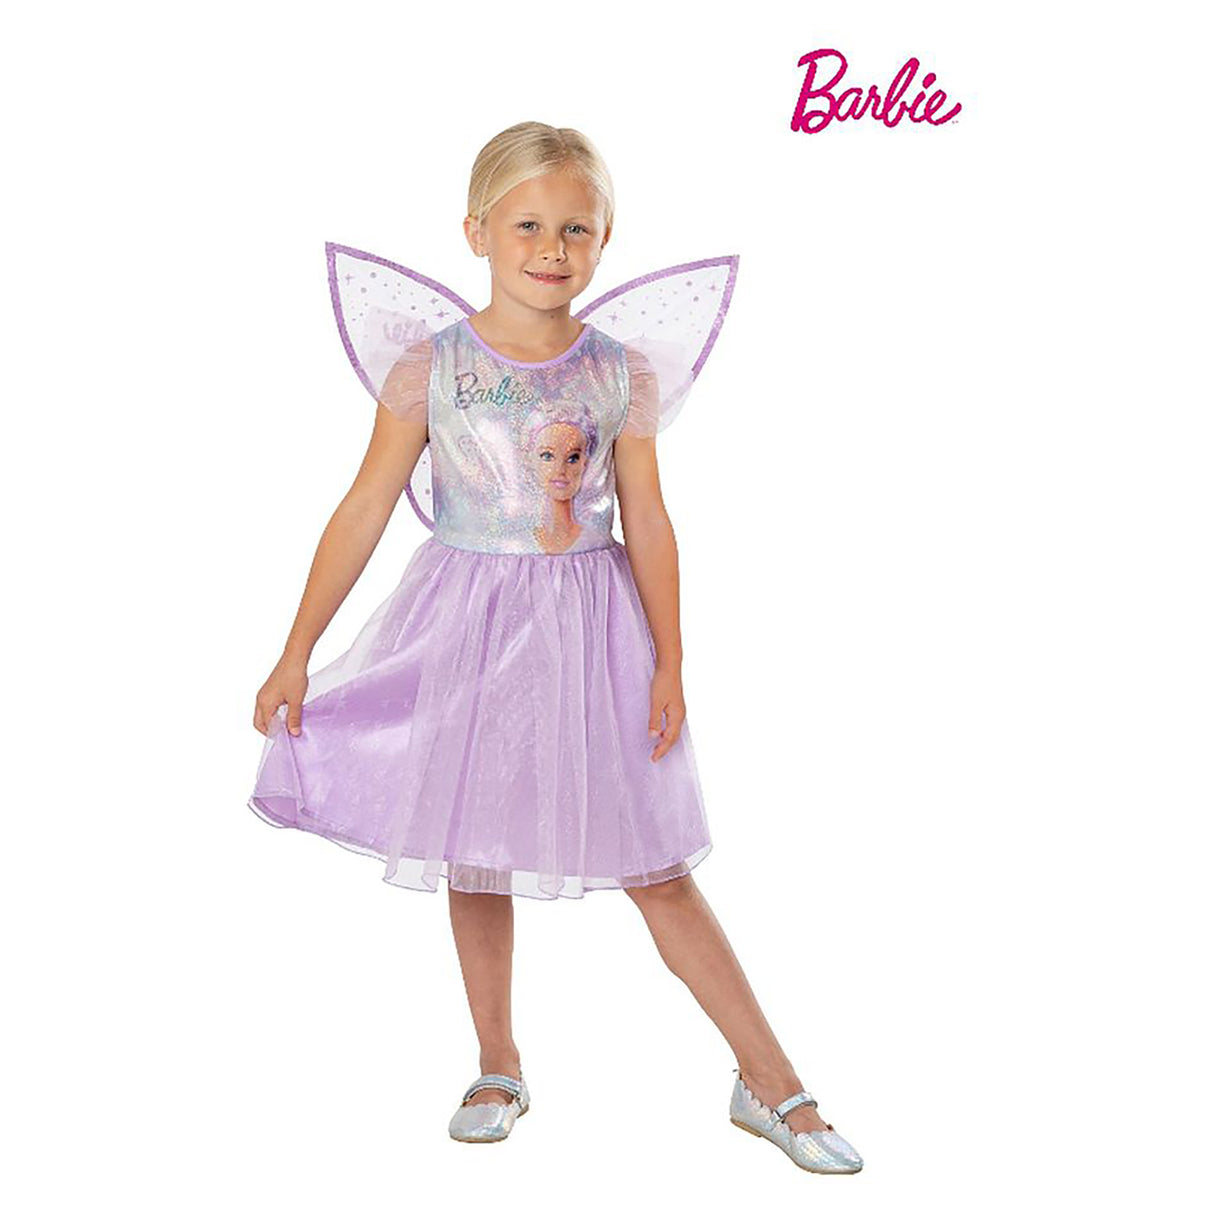 Rubies Barbie Fairy Costume Kids, Pink (6-8 years)